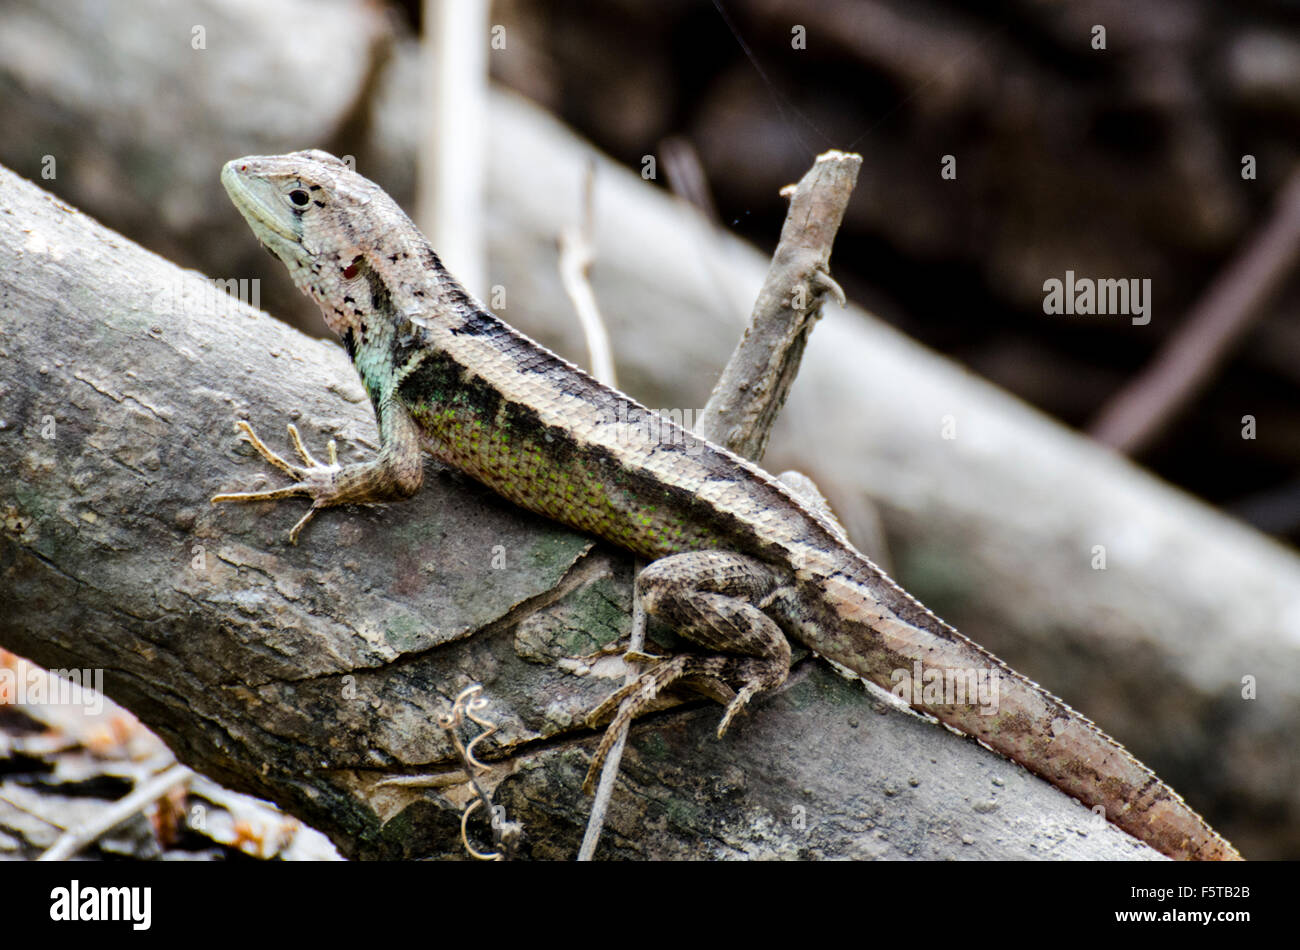 Striking Lizard from the Bosque Cerro Blanco Stock Photo